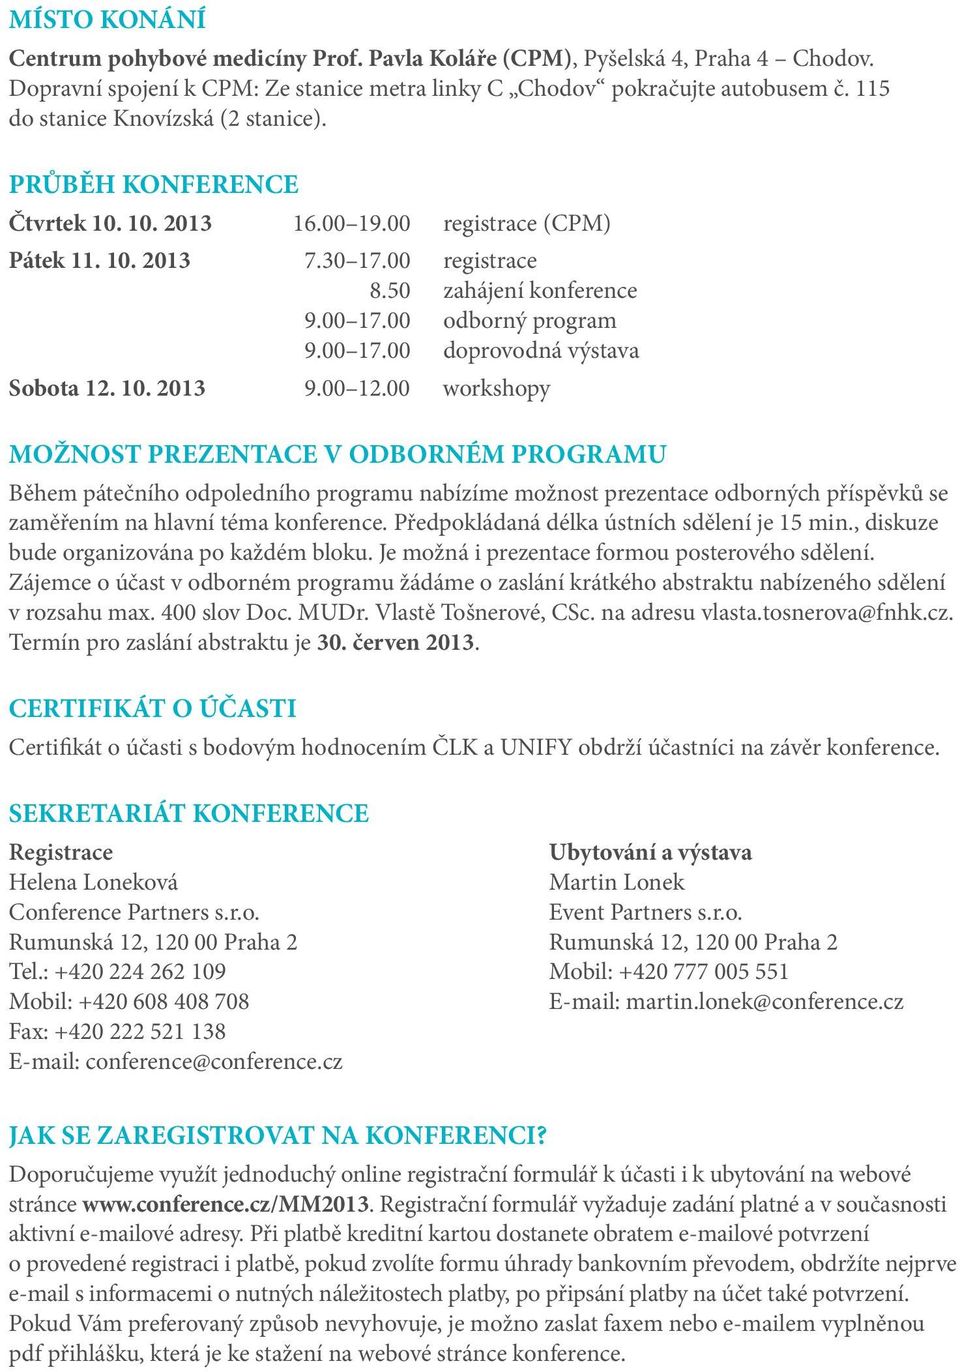 00 odborný program 9.00 17.00 doprovodná výstava Sobota 12. 10. 2013 9.00 12.